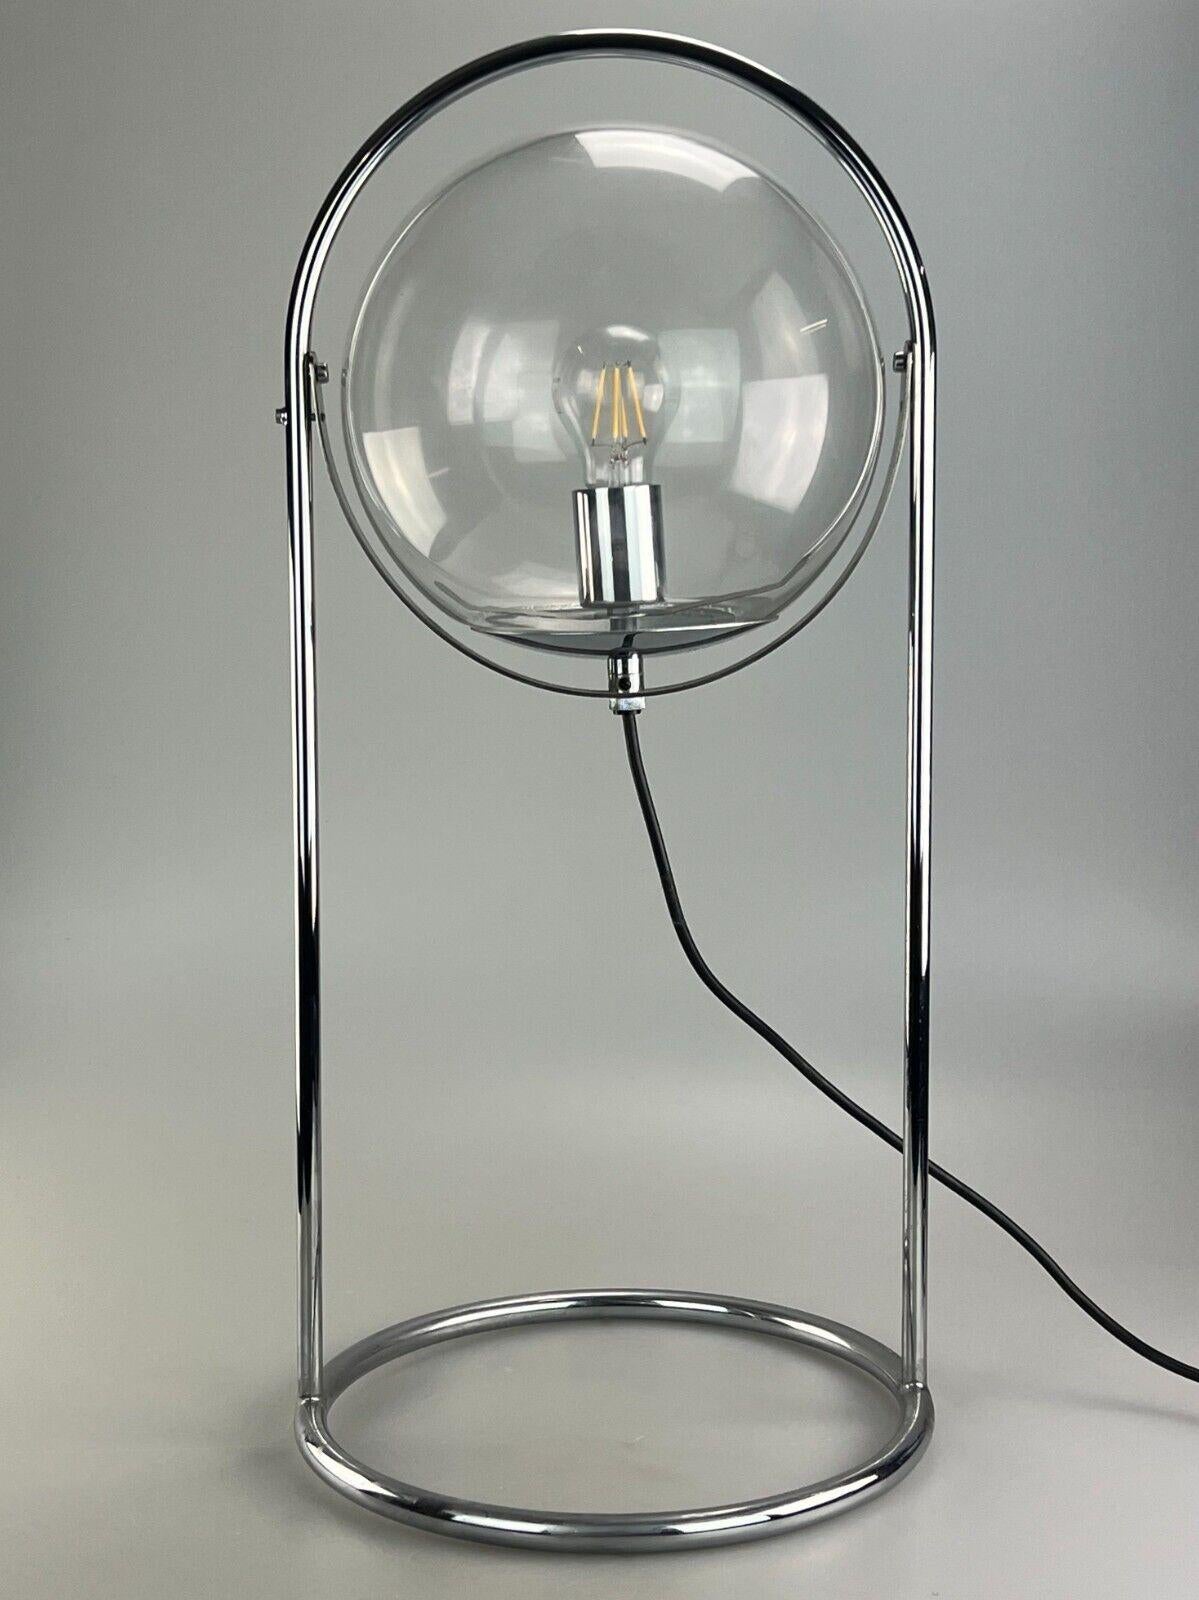 60s 70s lampe boule lampe de table lampe space age design verre metal

Objet : lampe sphérique

Fabricant :

Condit : bon

Âge : environ 1960-1970

Dimensions :

Diamètre = 31cm
Hauteur = 66cm

Autres notes :

Douille E27

Les